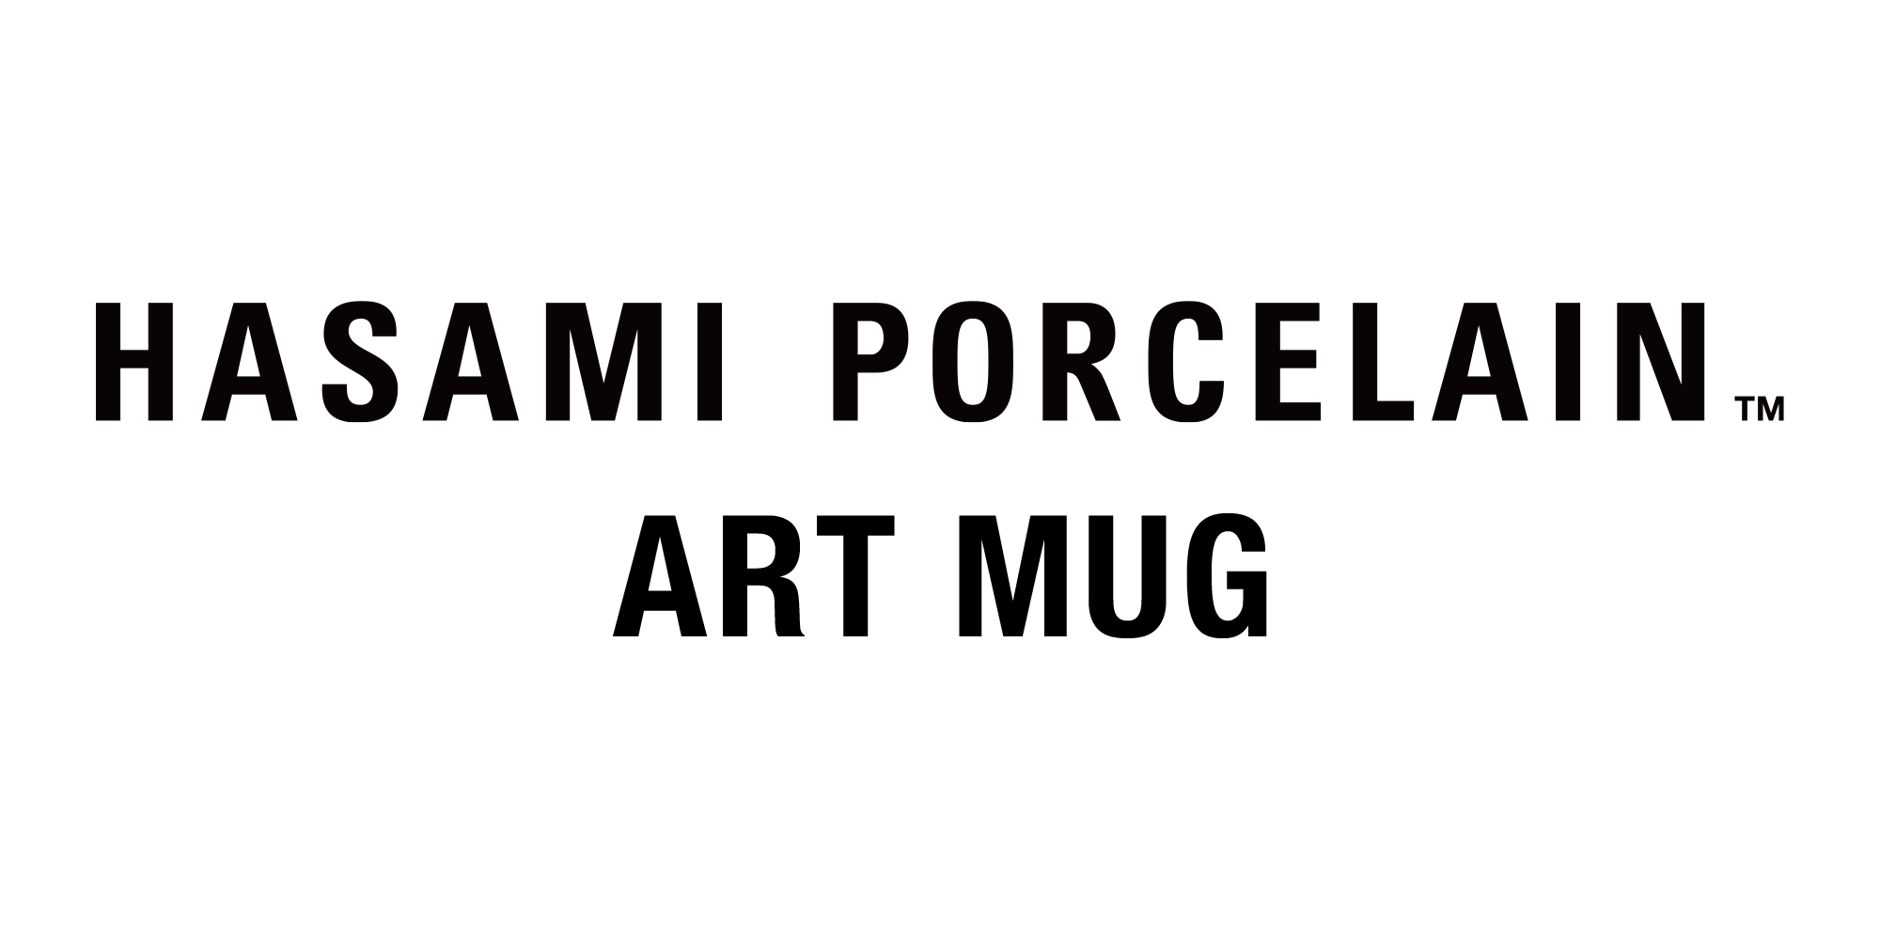 Hasami Porcelain Art Mug